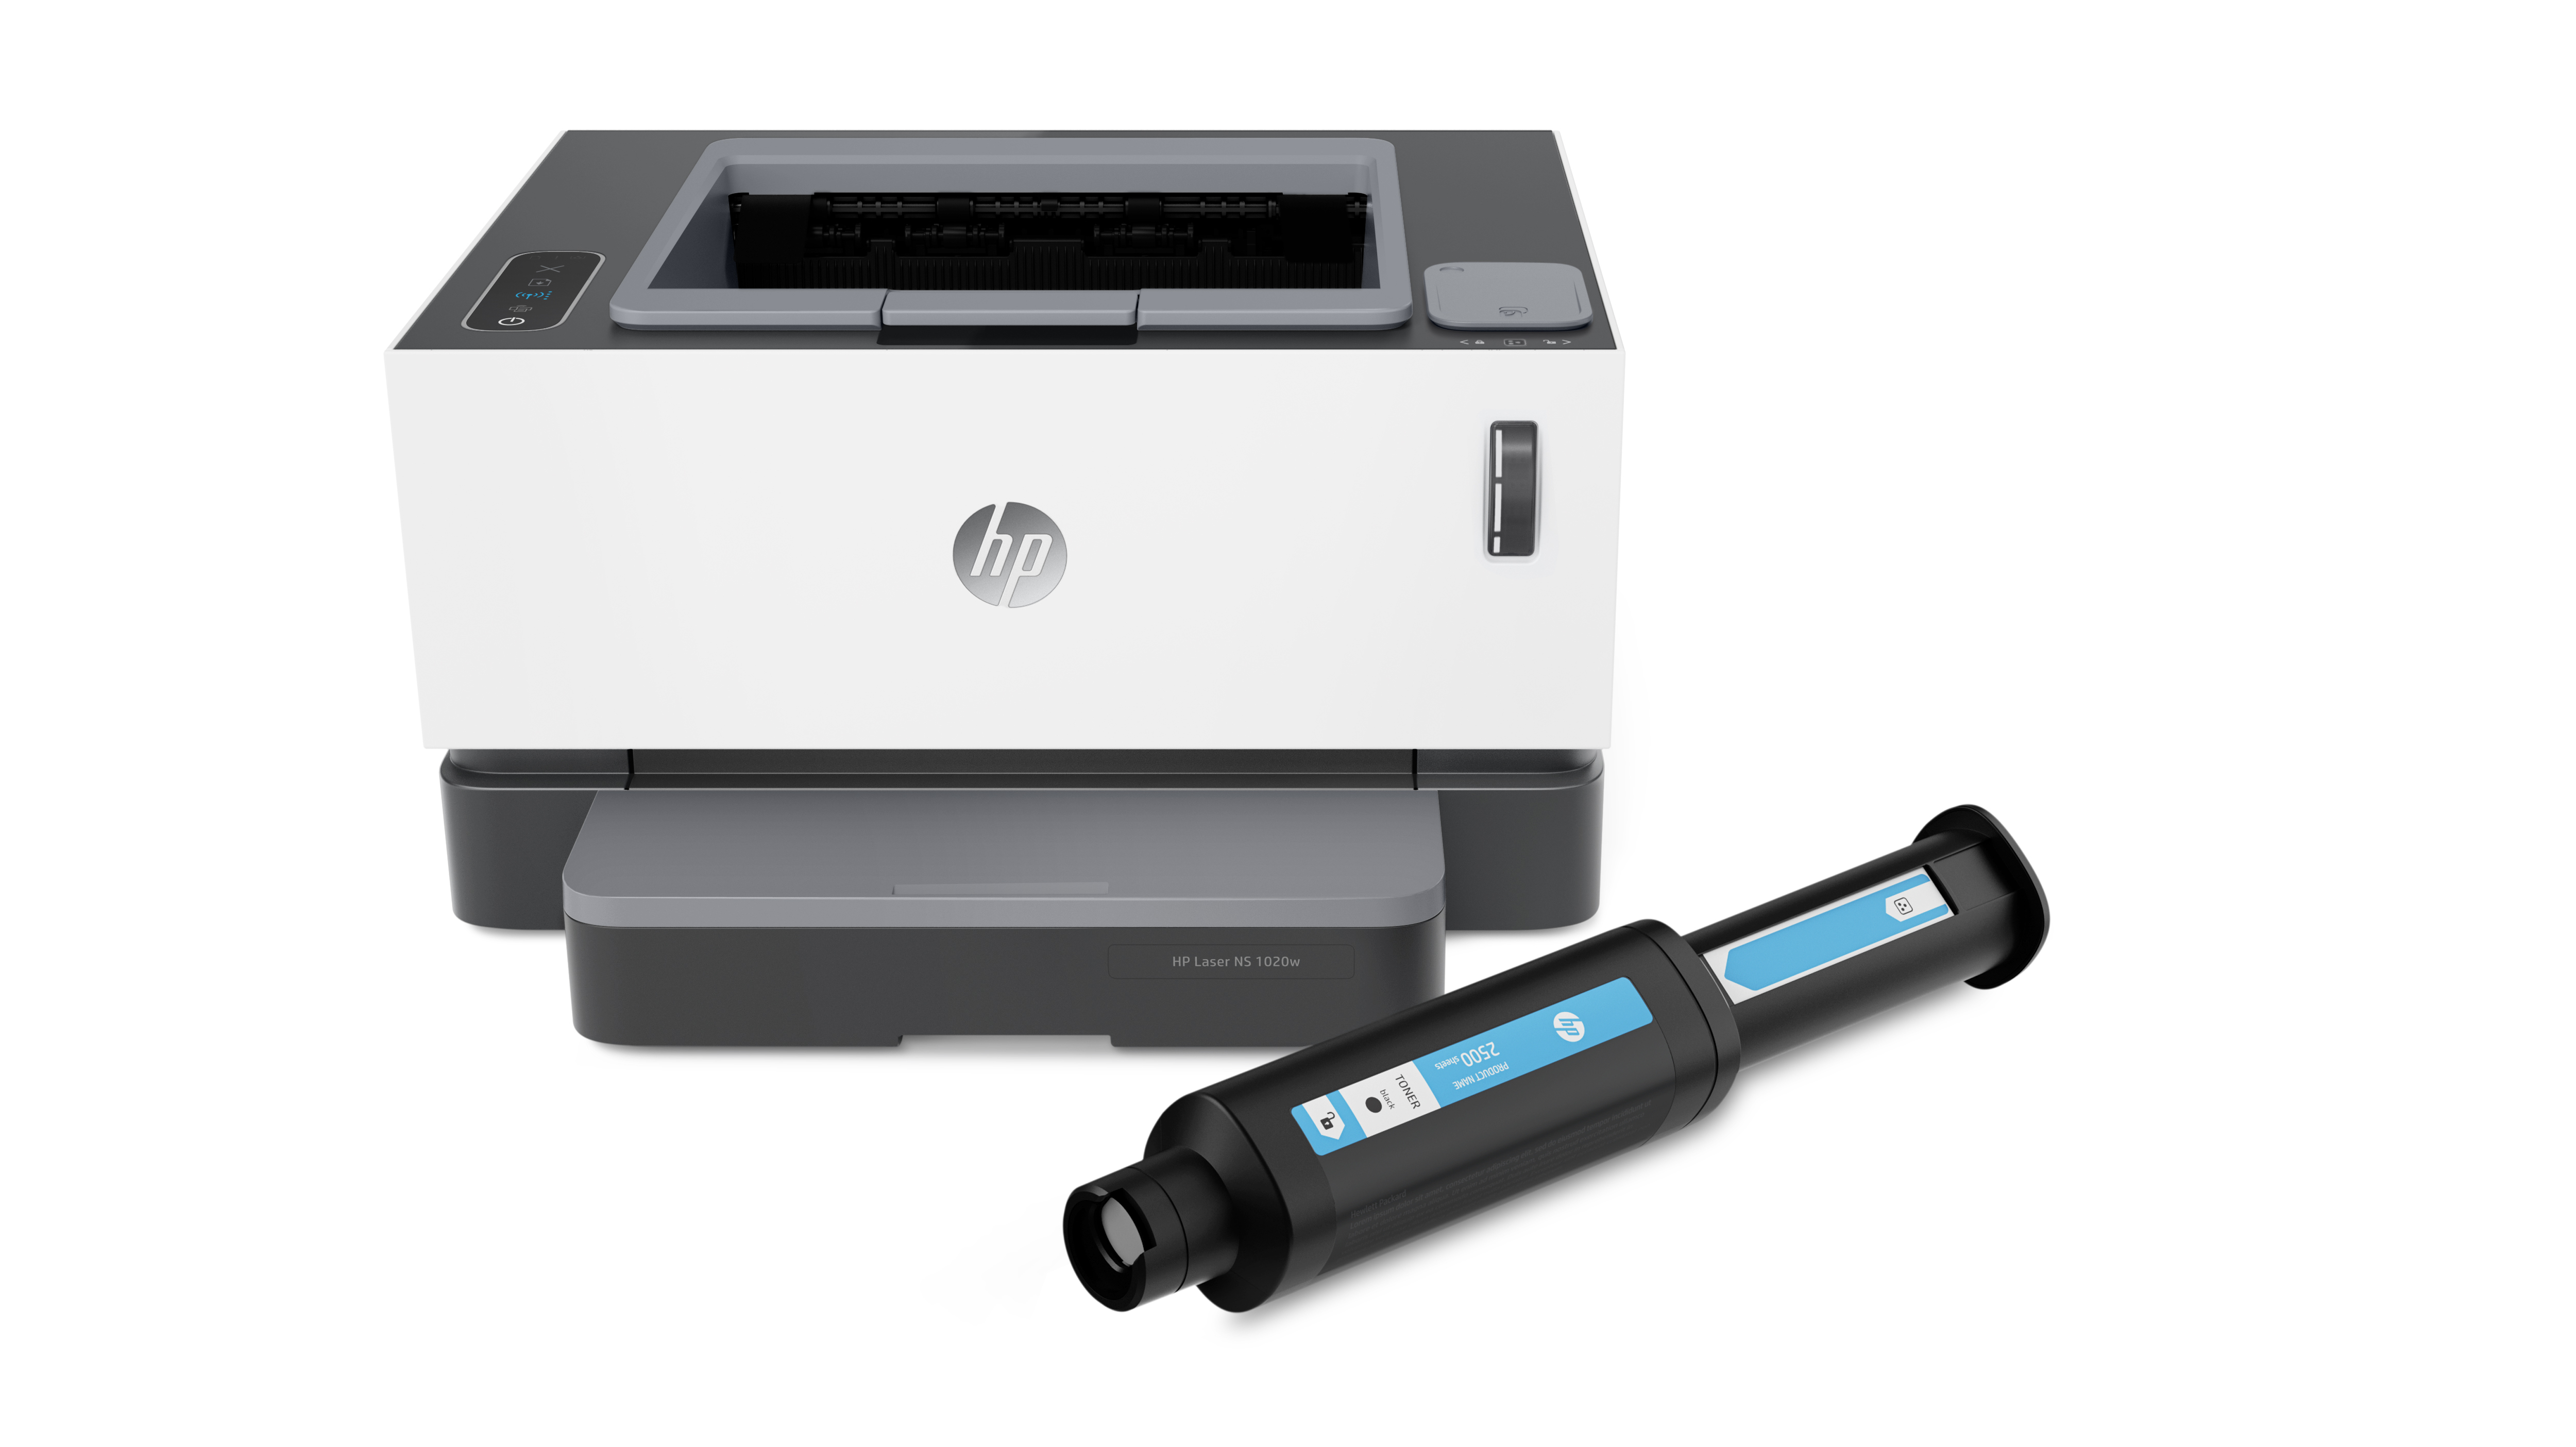 HP-Laserdrucker Neverstop: Tonerbefüllung per Spritze | heise online